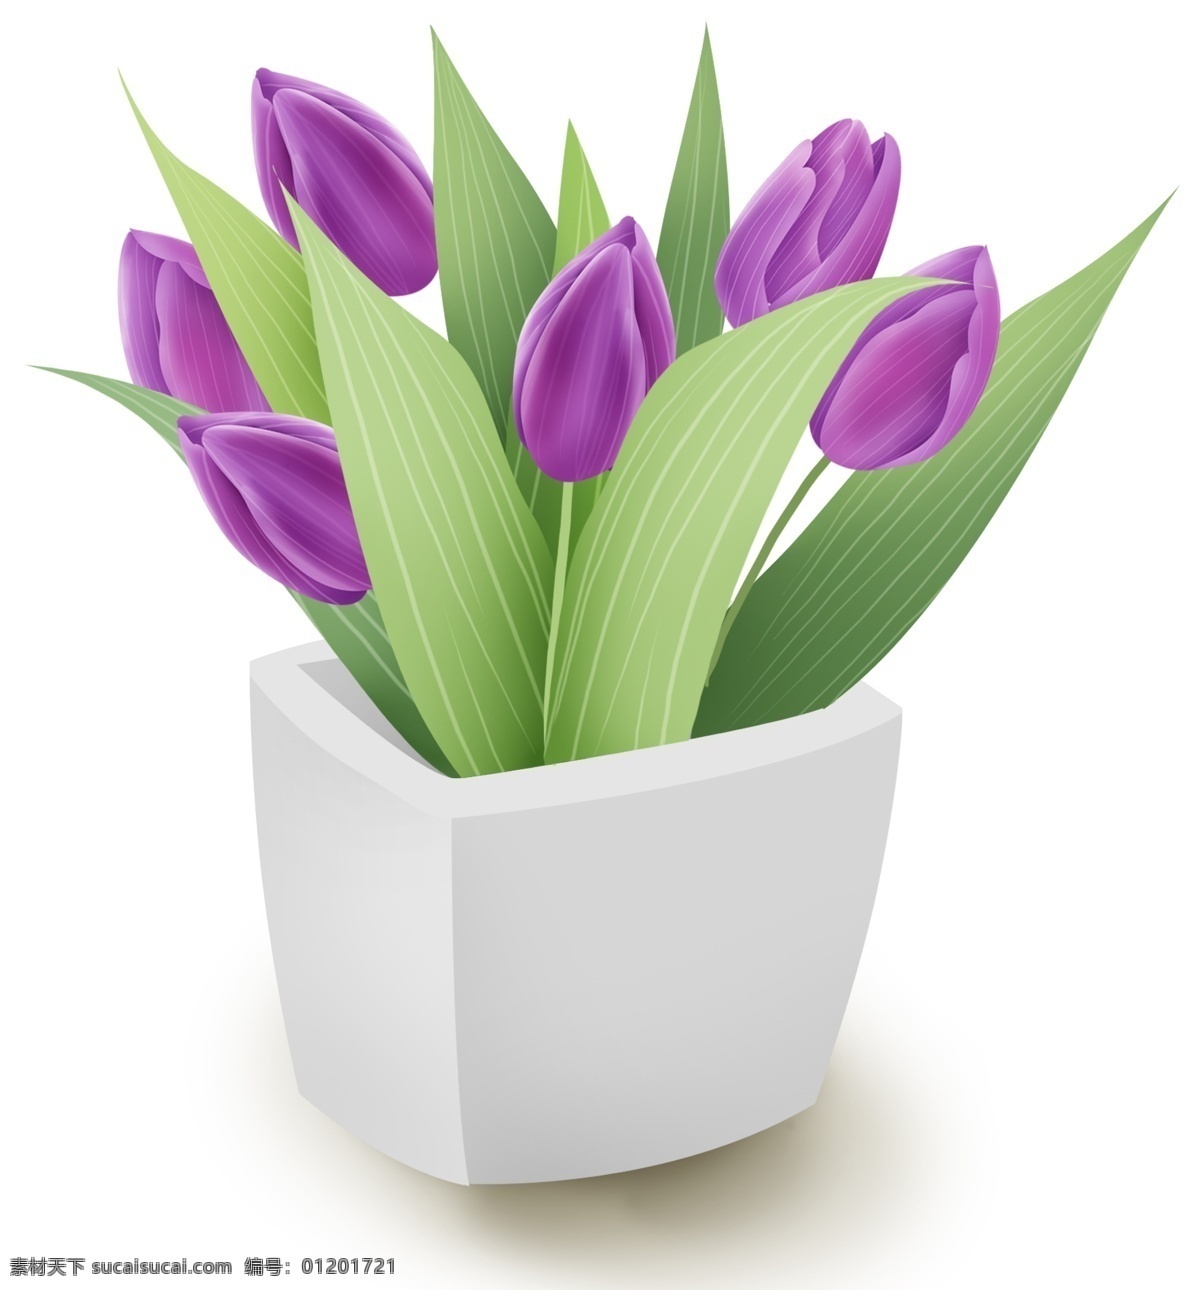 紫色 郁金香 家庭 盆栽 紫色郁金香 花卉 花朵 春天 植物 叶子 花瓶 鲜花 夏天